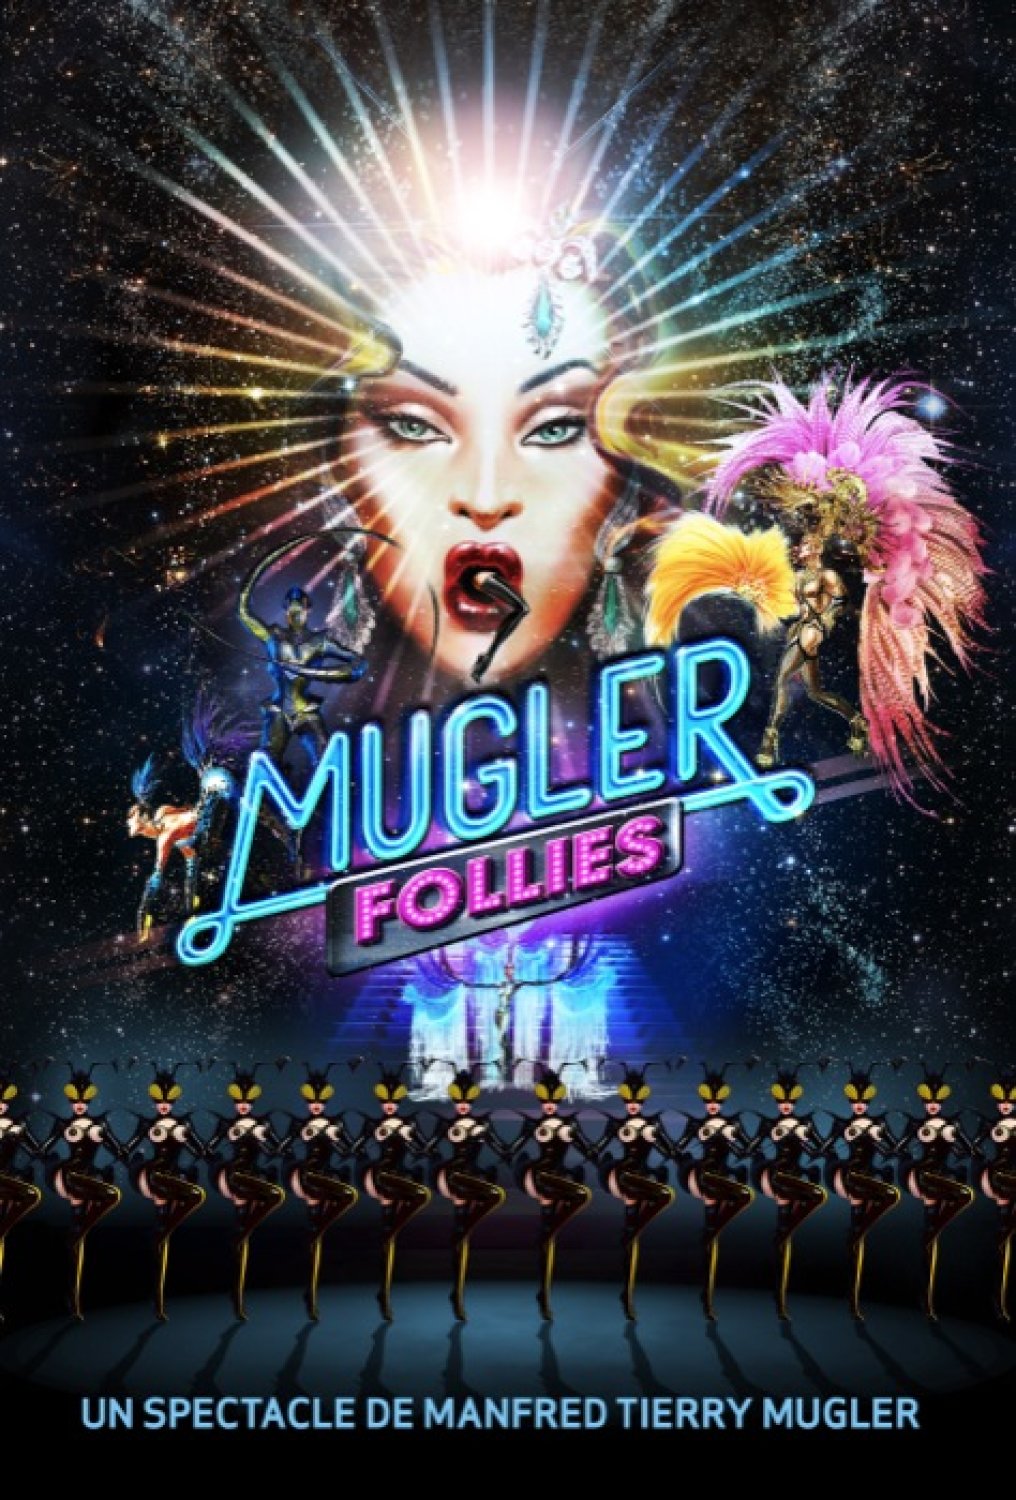 Mugler Follies